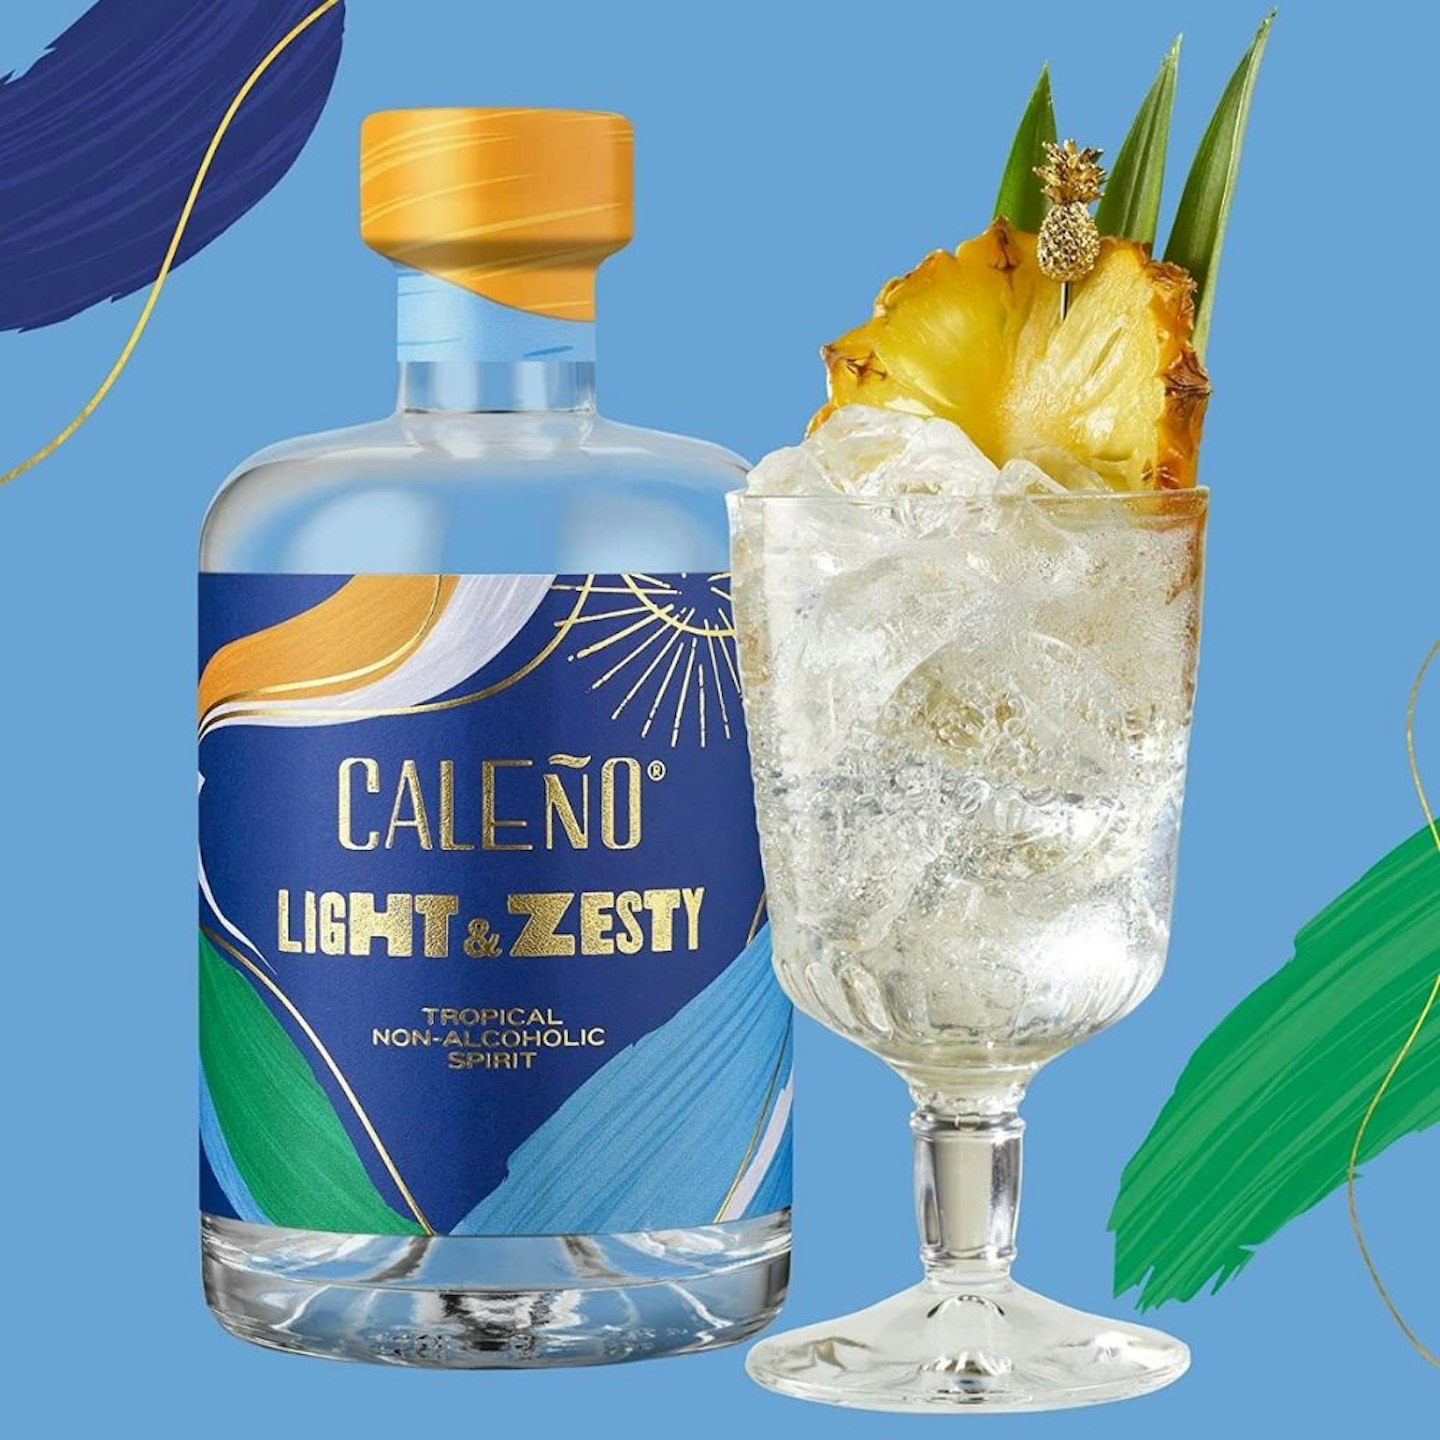 Caleño Light & Zesty Tropical Non-Alcoholic Gin 50cl